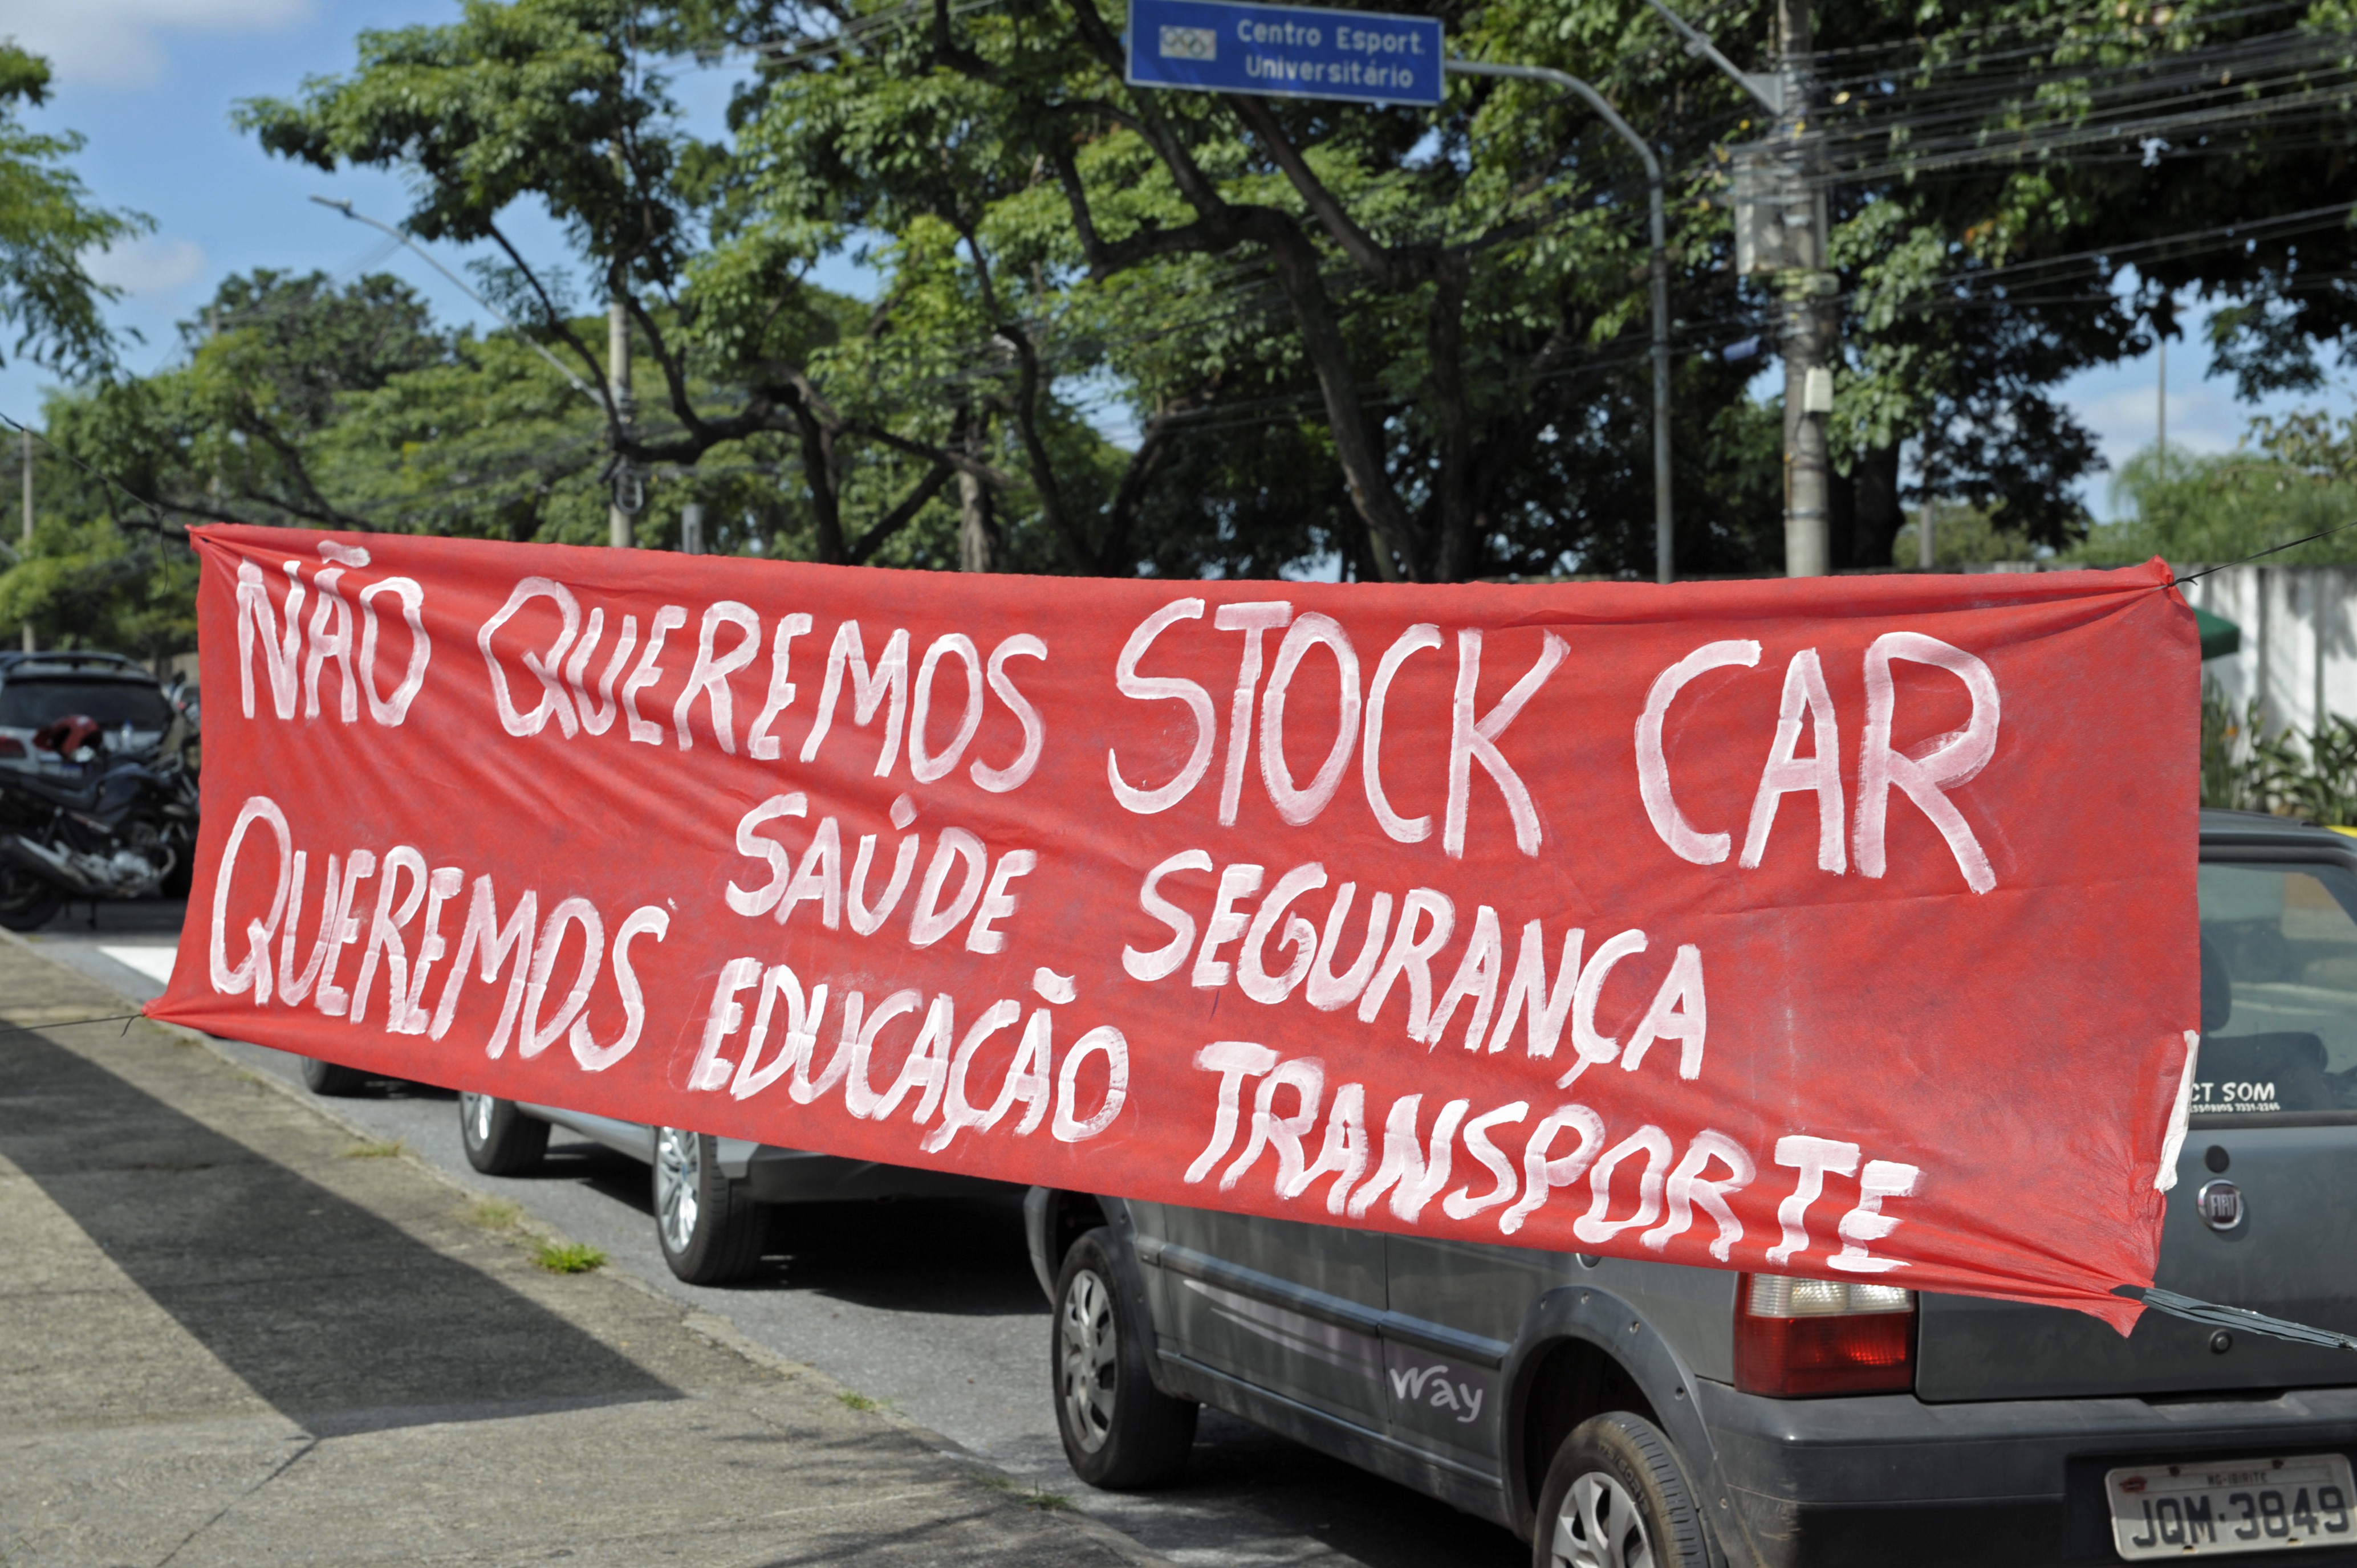 Faixa de protesto contra a Stock Car na Pampulha